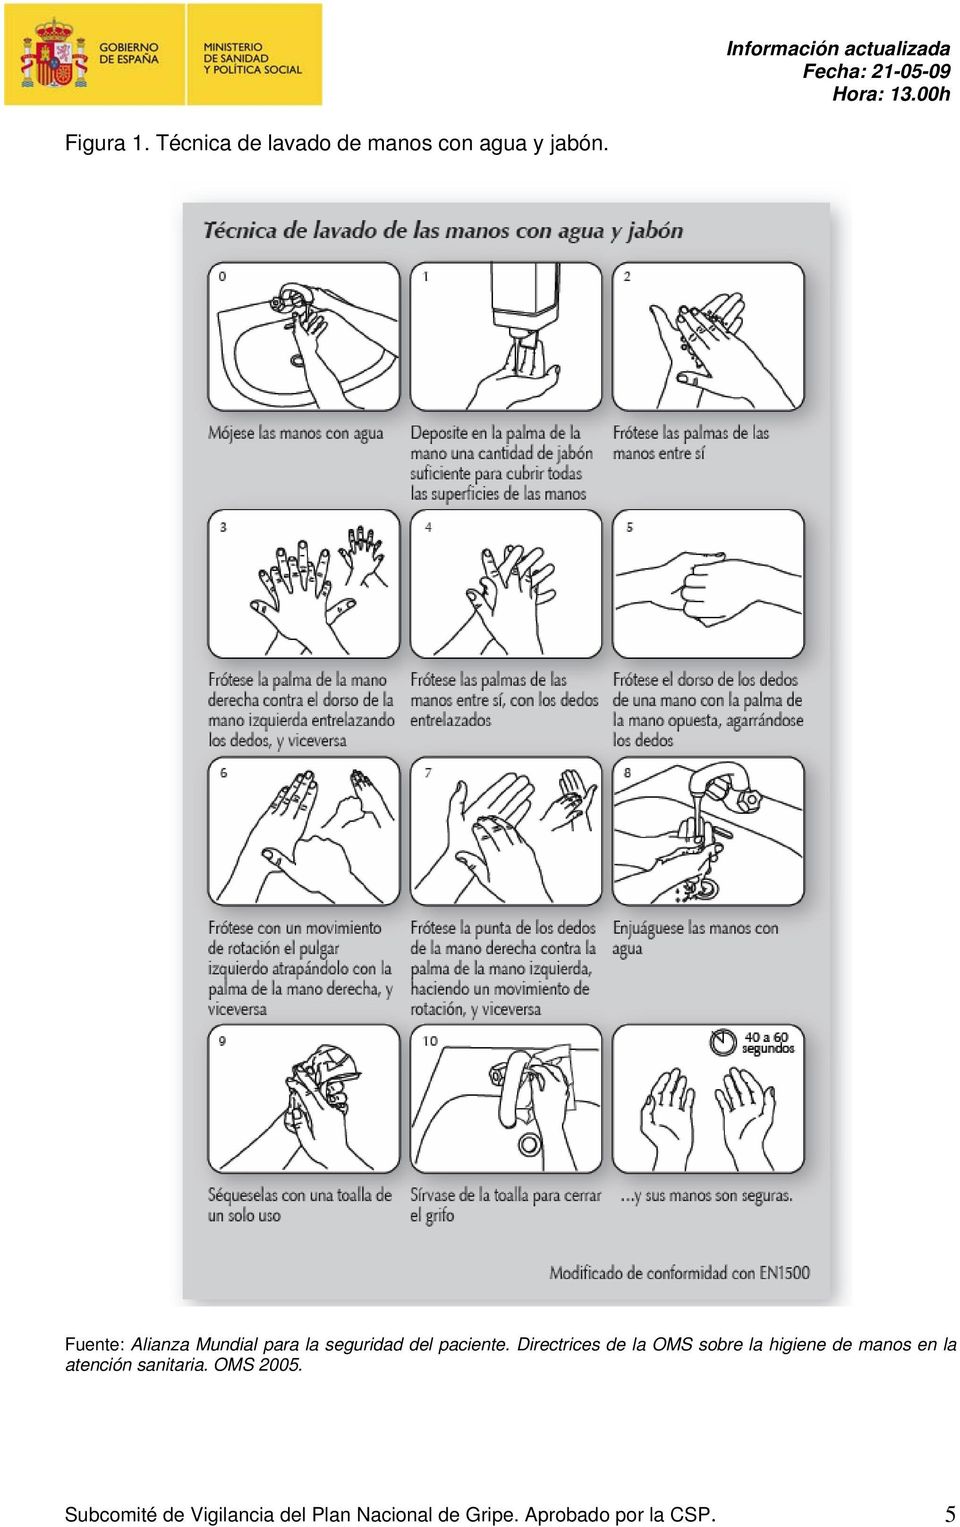 Directrices de la OMS sobre la higiene de manos en la atención